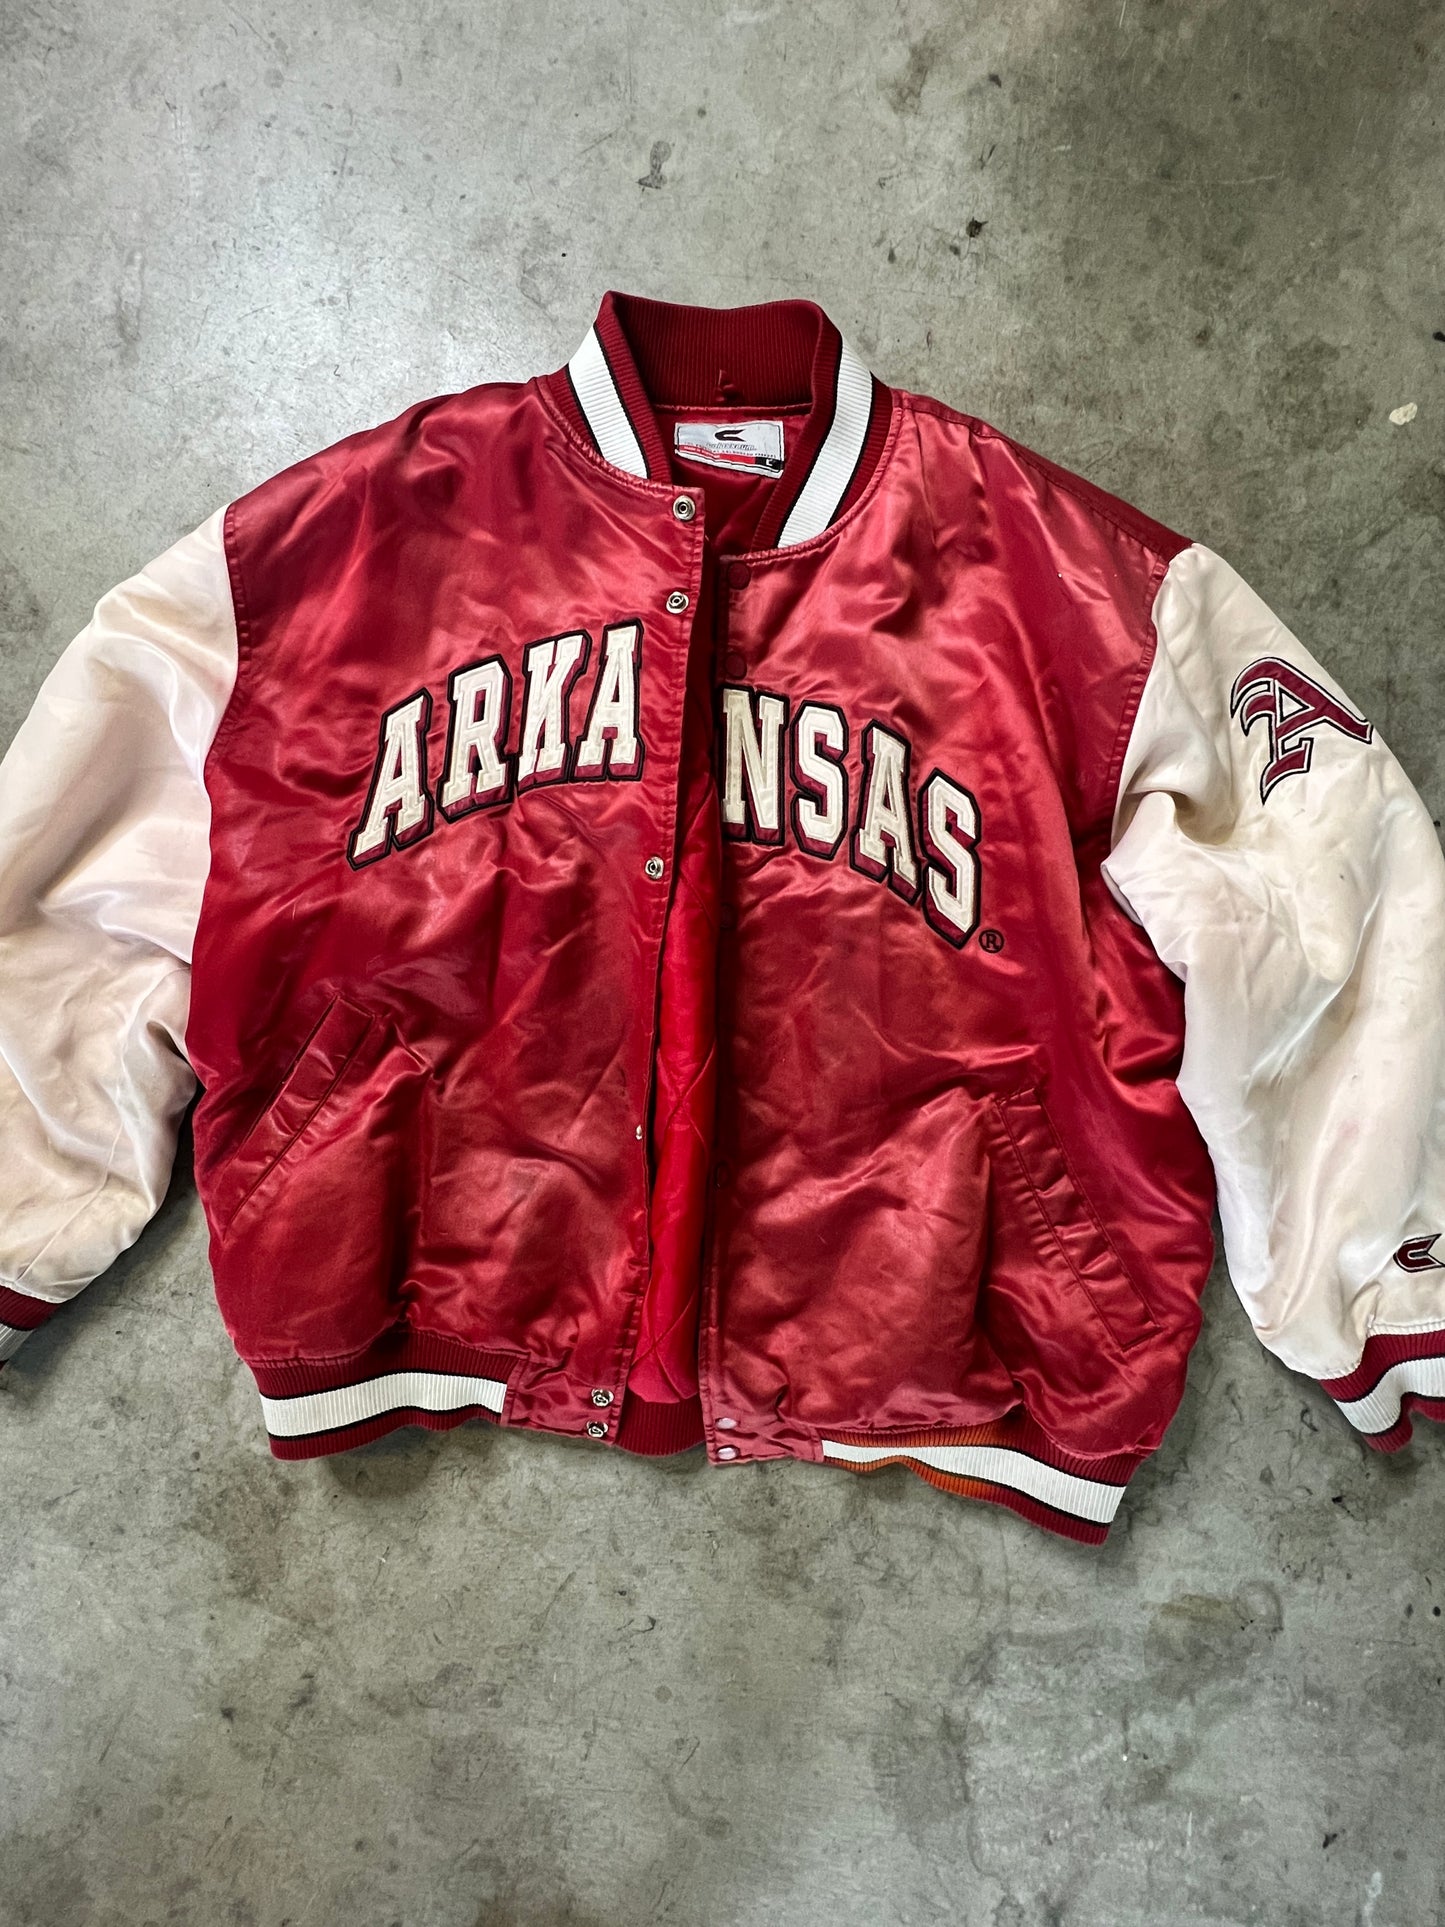 Vintage Arkansas Jacket